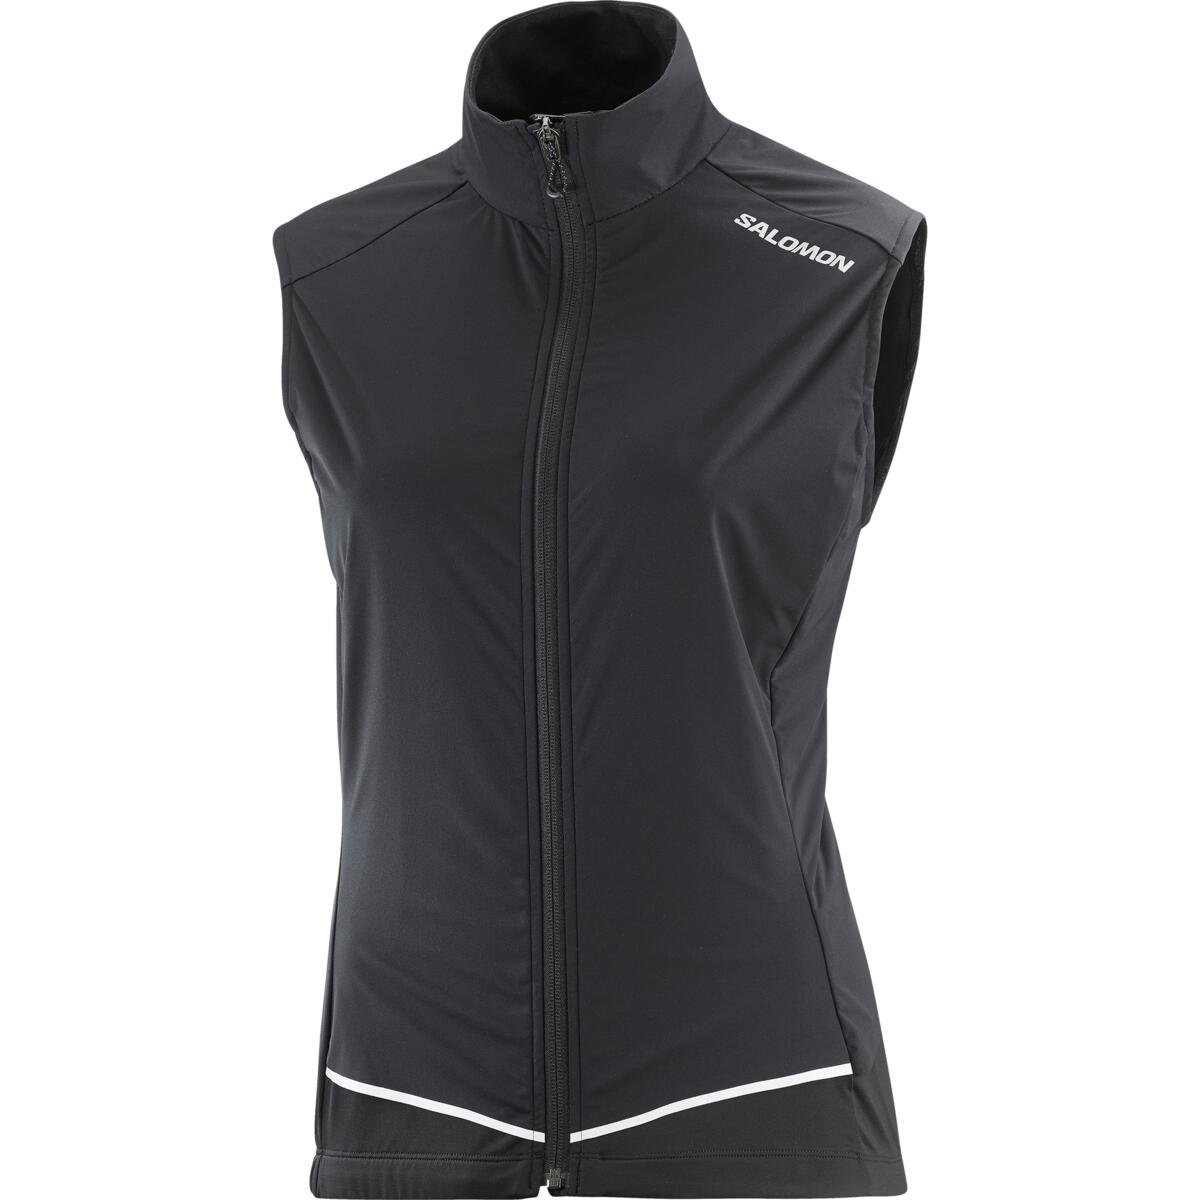 Salomon Light Shell Vest Kadın Koşu Rüzgarlığı - Siyah - 1